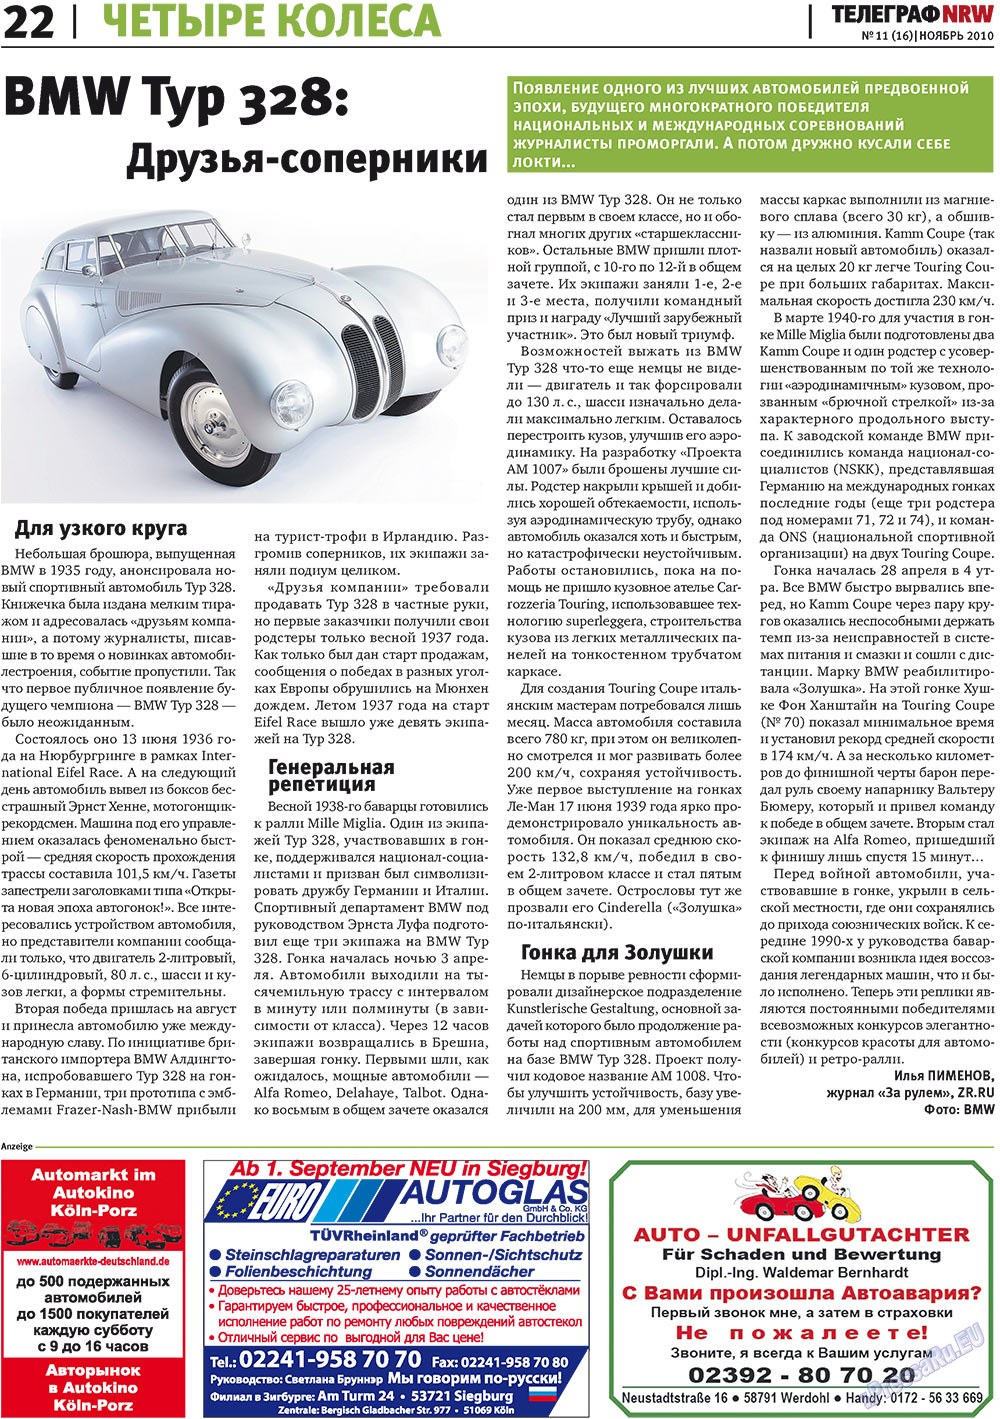 Telegraf NRW (Zeitung). 2010 Jahr, Ausgabe 11, Seite 22